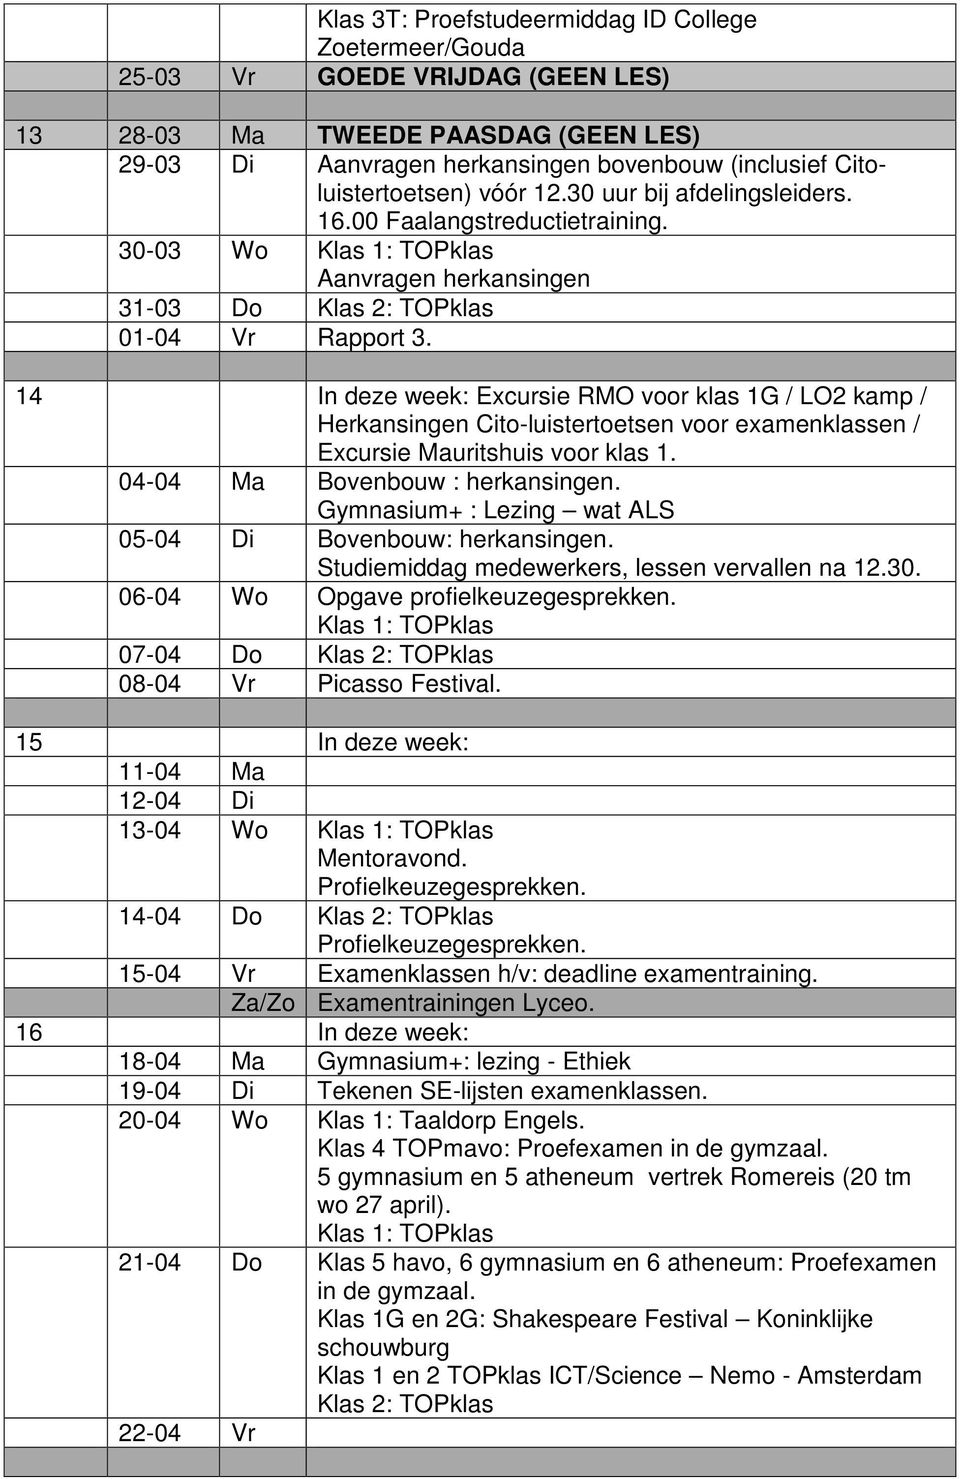 14 In deze week: Excursie RMO voor klas 1G / LO2 kamp / Herkansingen Cito-luistertoetsen voor examenklassen / Excursie Mauritshuis voor klas 1. 04-04 Ma Bovenbouw : herkansingen.